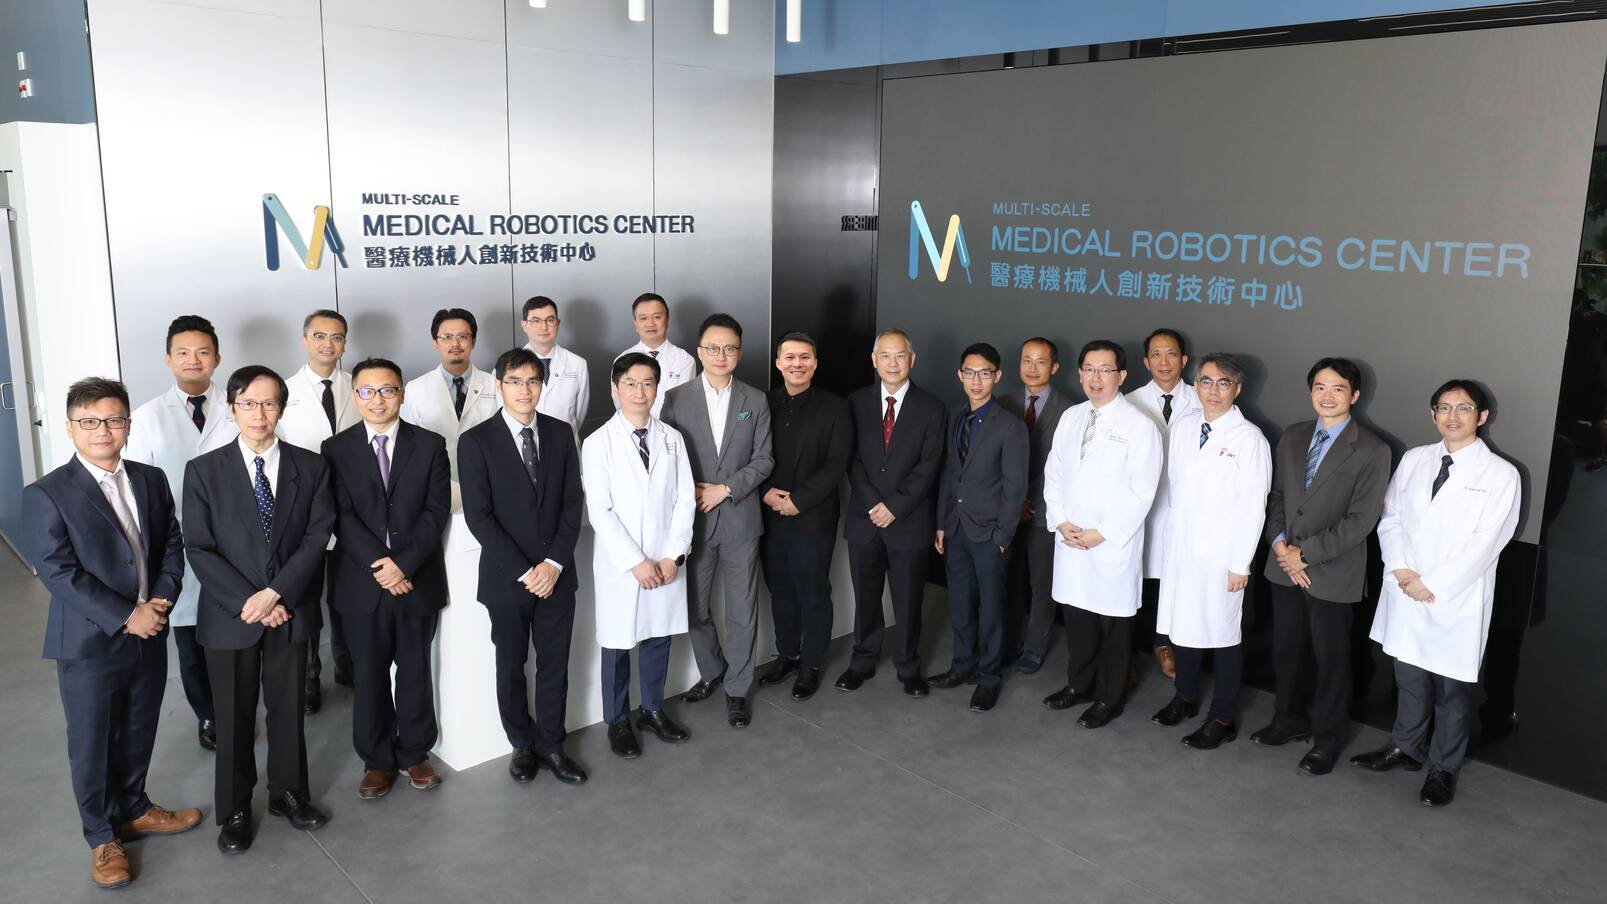 医疗机械人创新技术中心(MRC)主要研究人员和顾问来自医学院和工程学院，以实现跨学科医疗机械人的研究和开发。